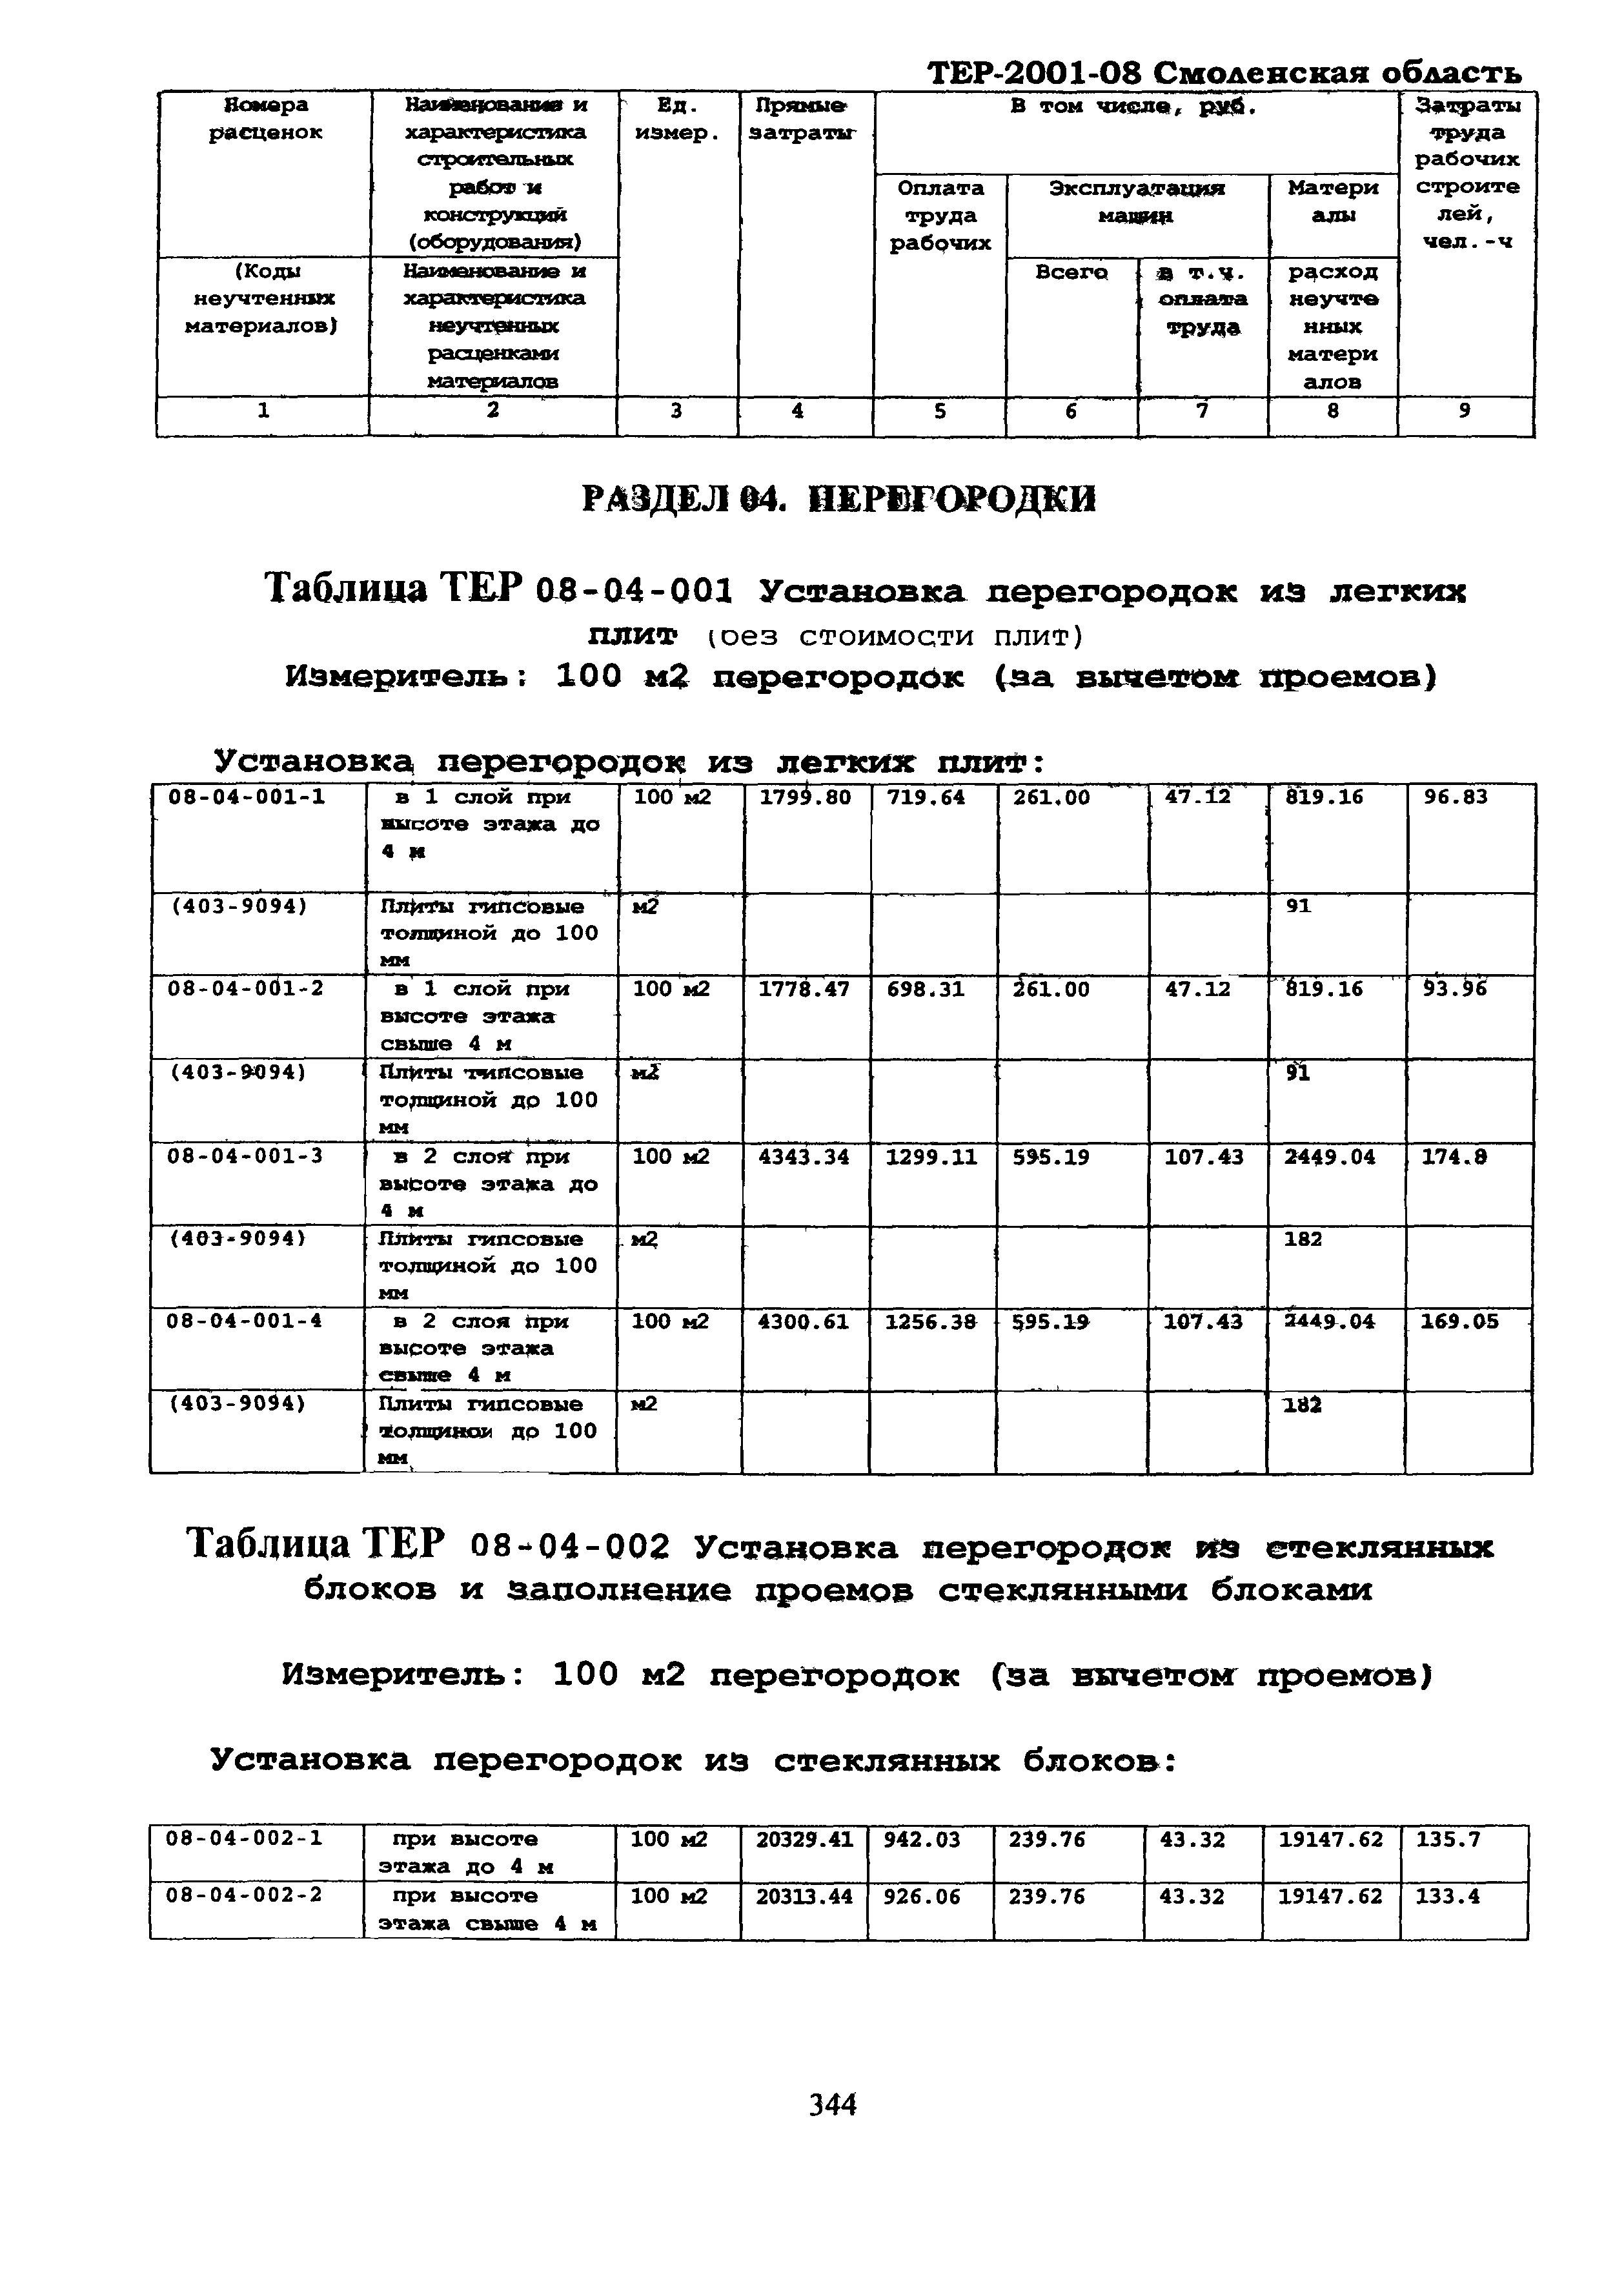 ТЕР Смоленской обл. 2001-08